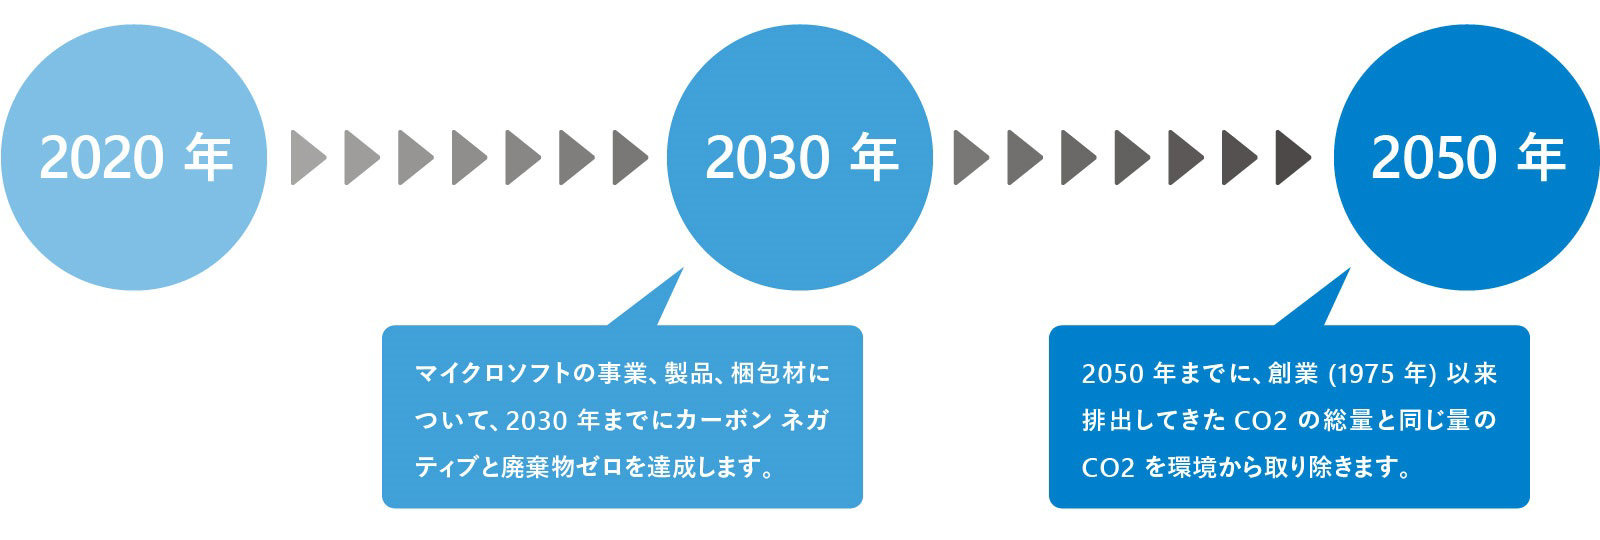 マイクロソフトの 2020 年から 2050 年にかけての地球環境保全および保護の公約の図